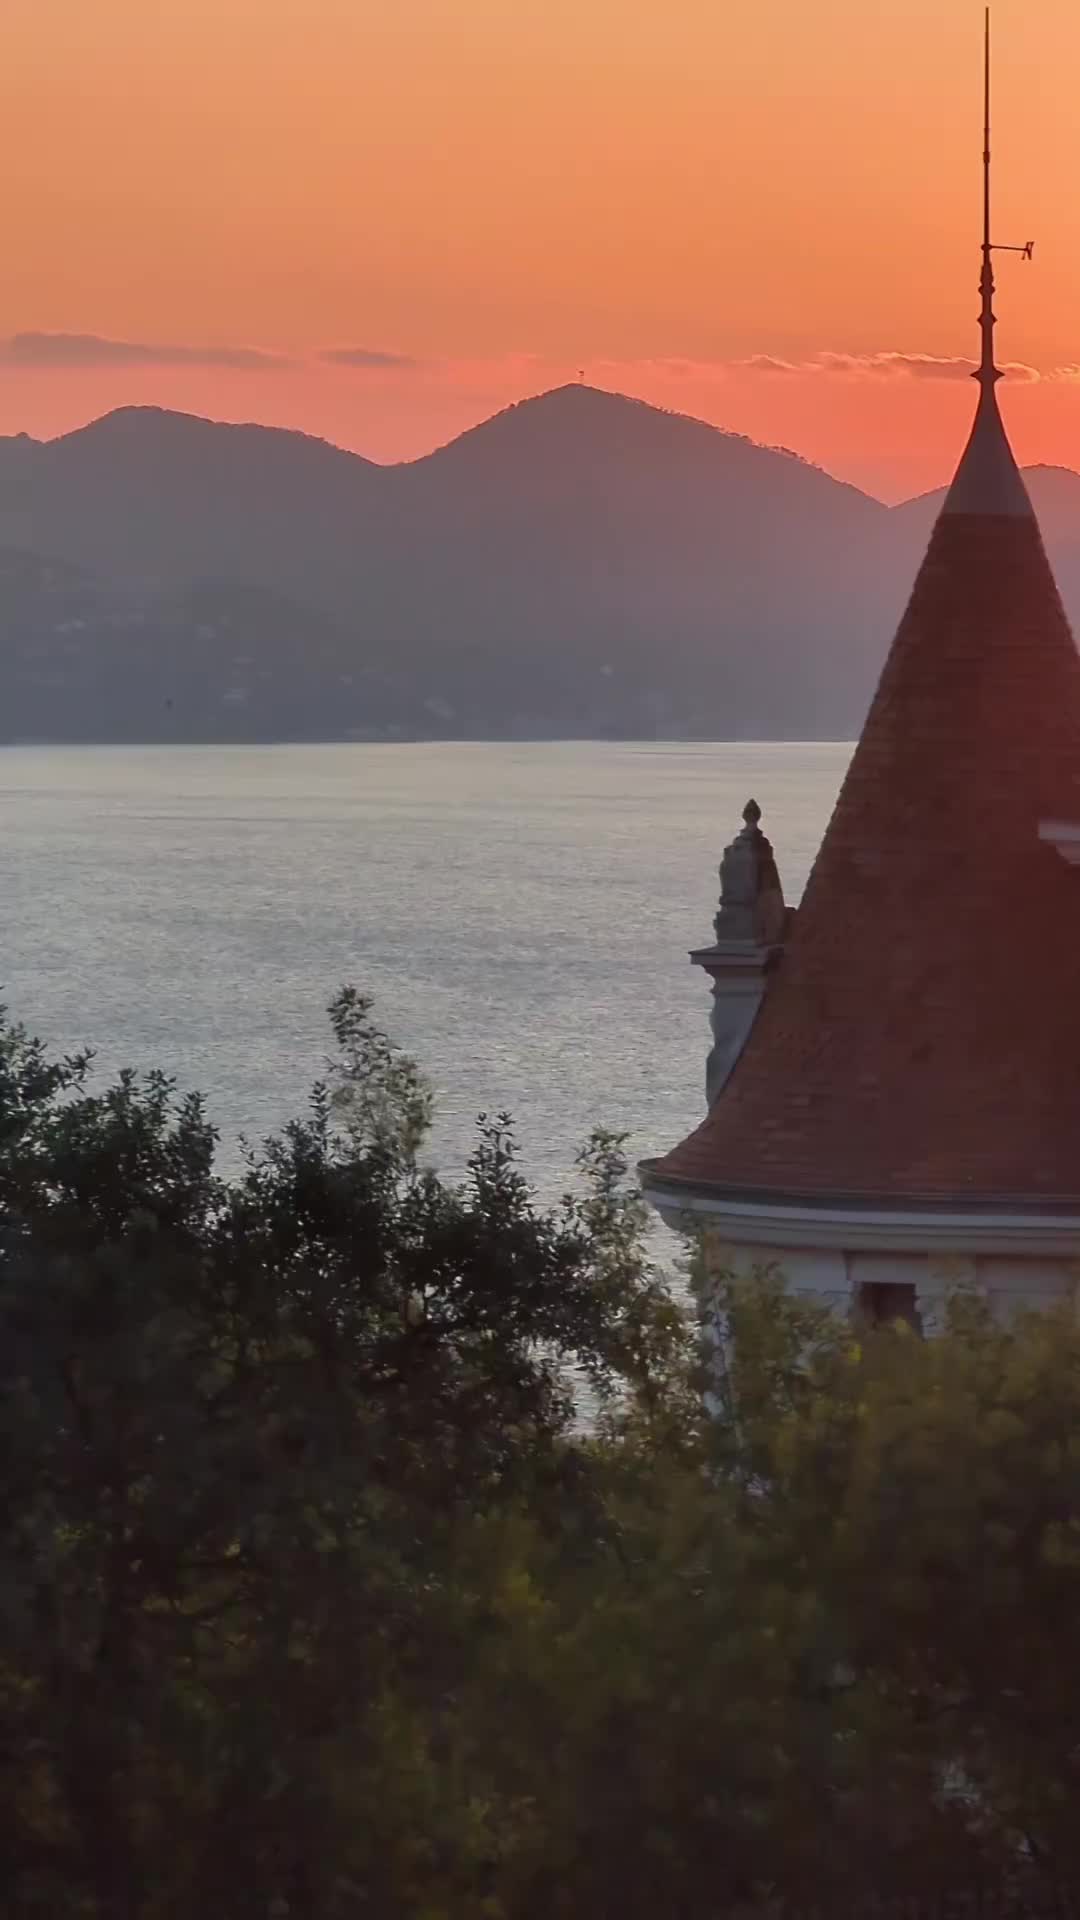 Magical Sunset Over Cannes - A Hidden Gem